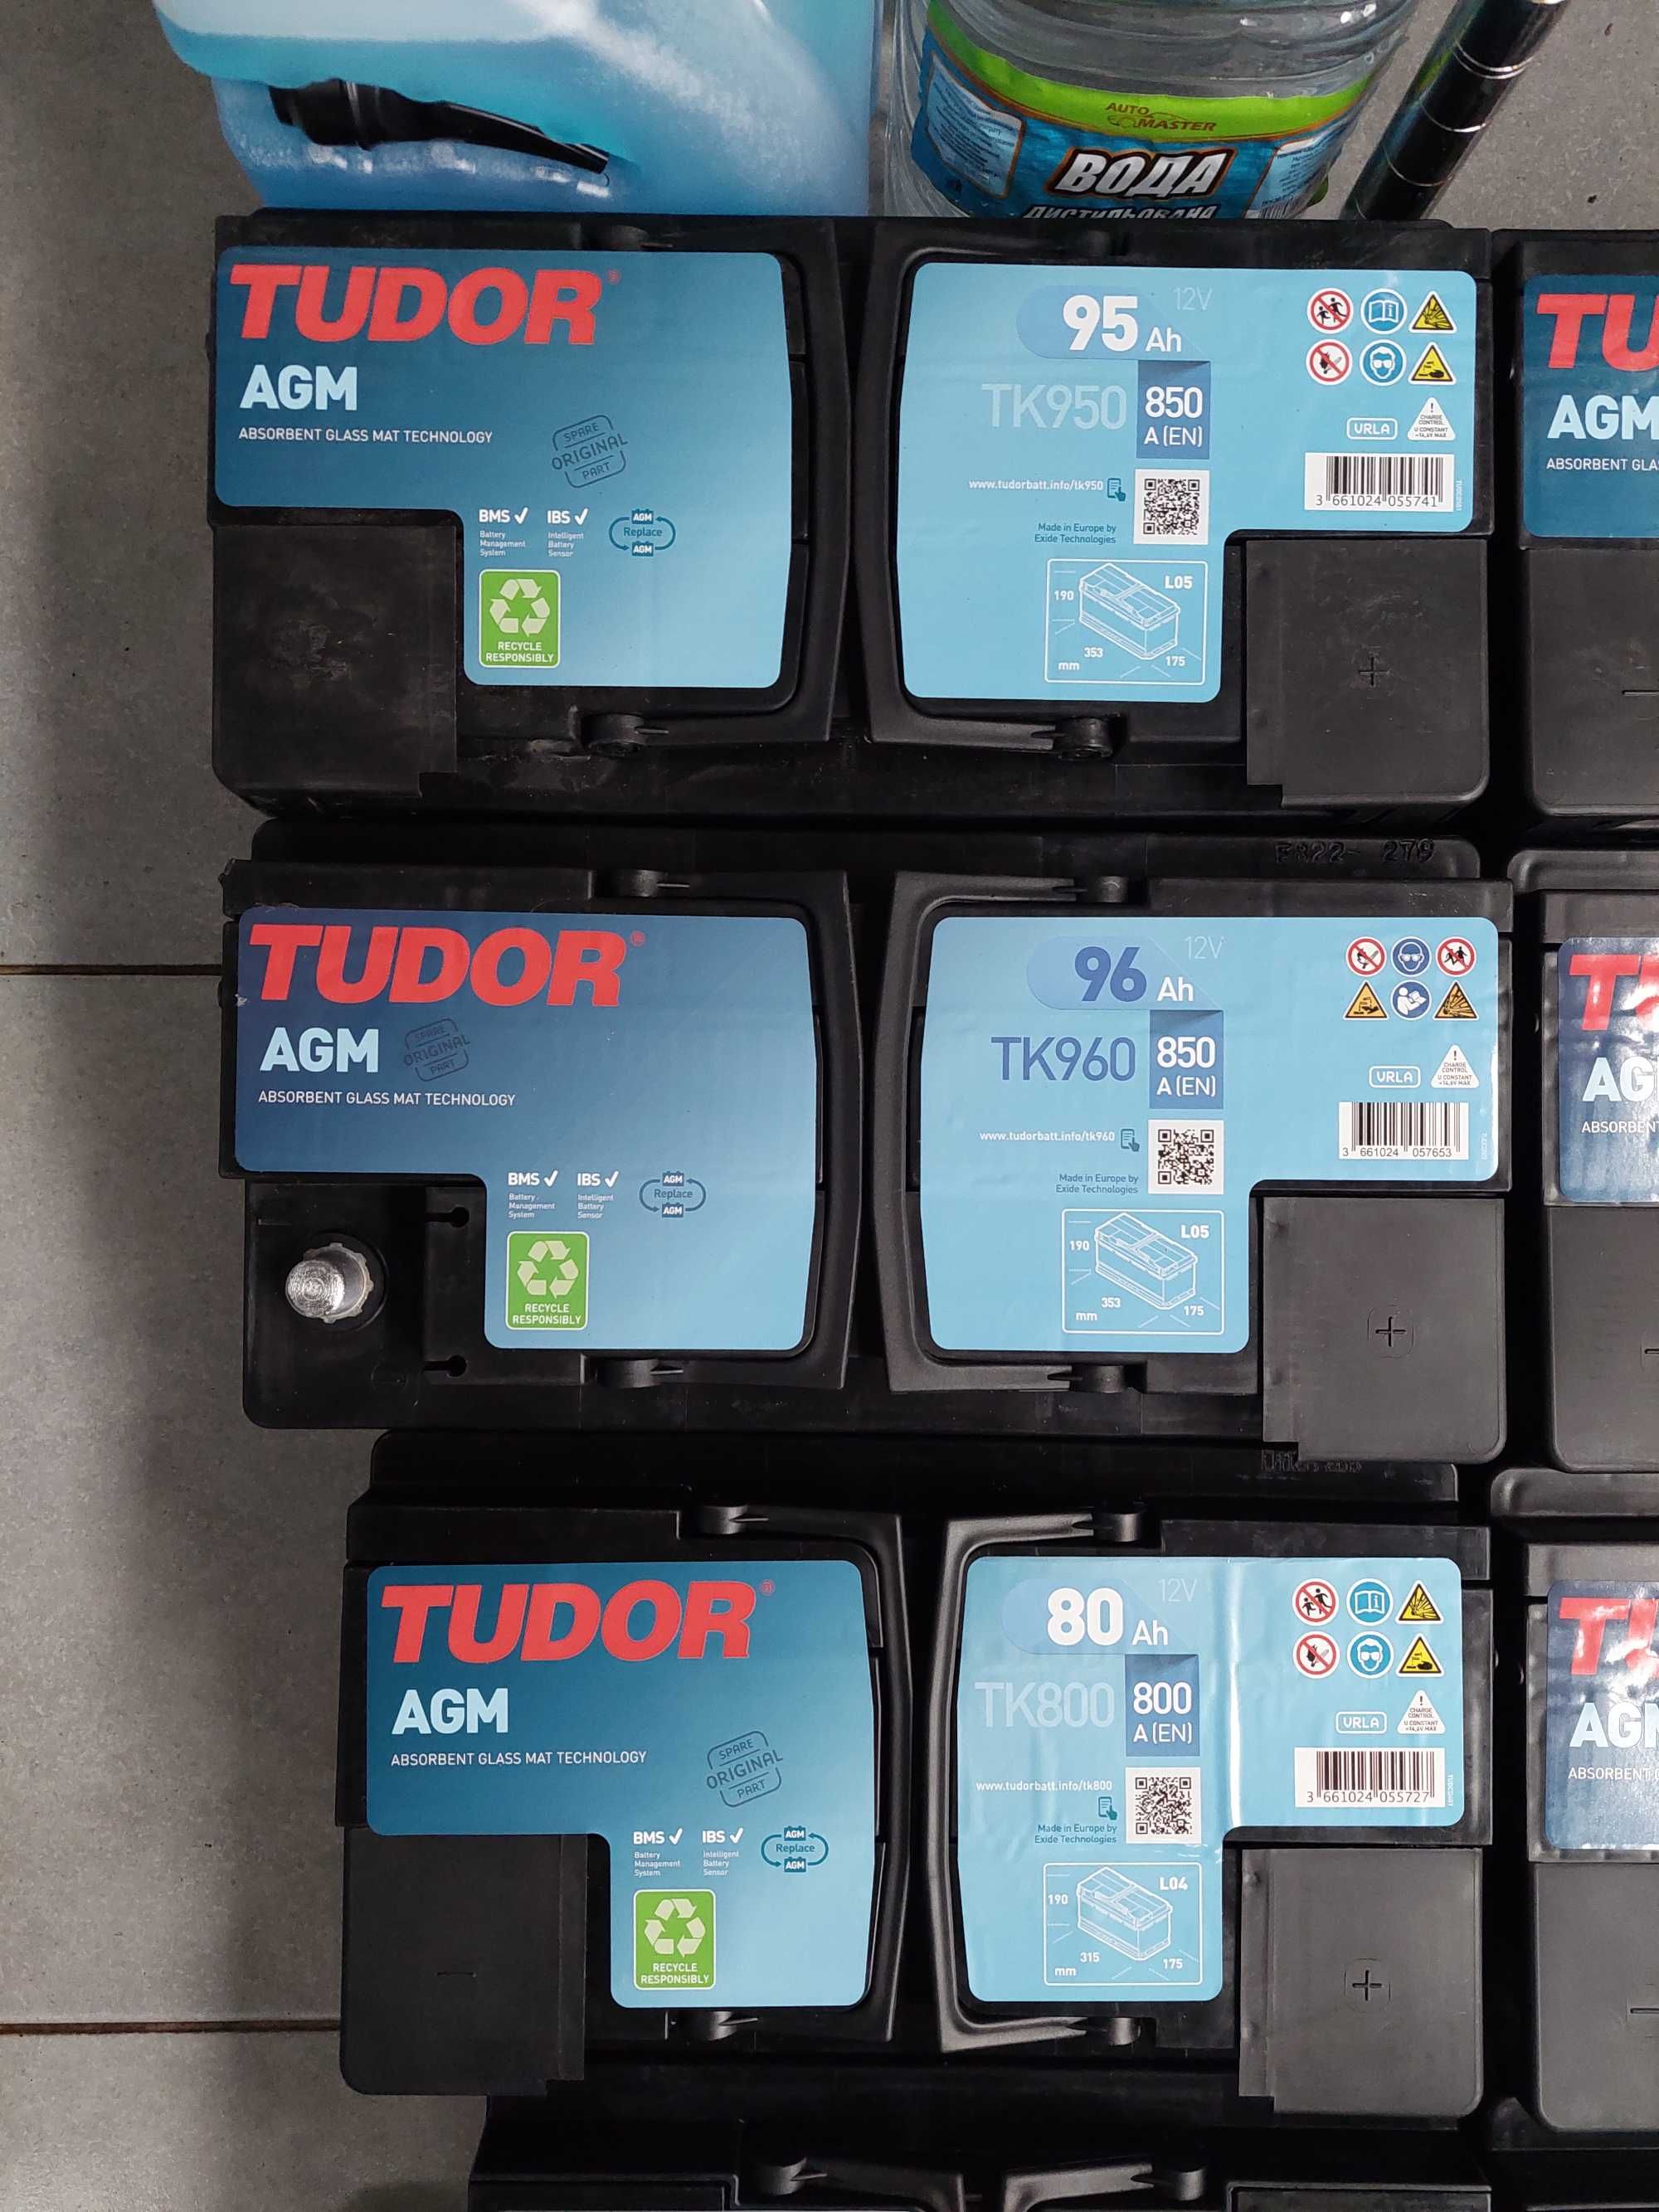 Batterie Tudor TK600